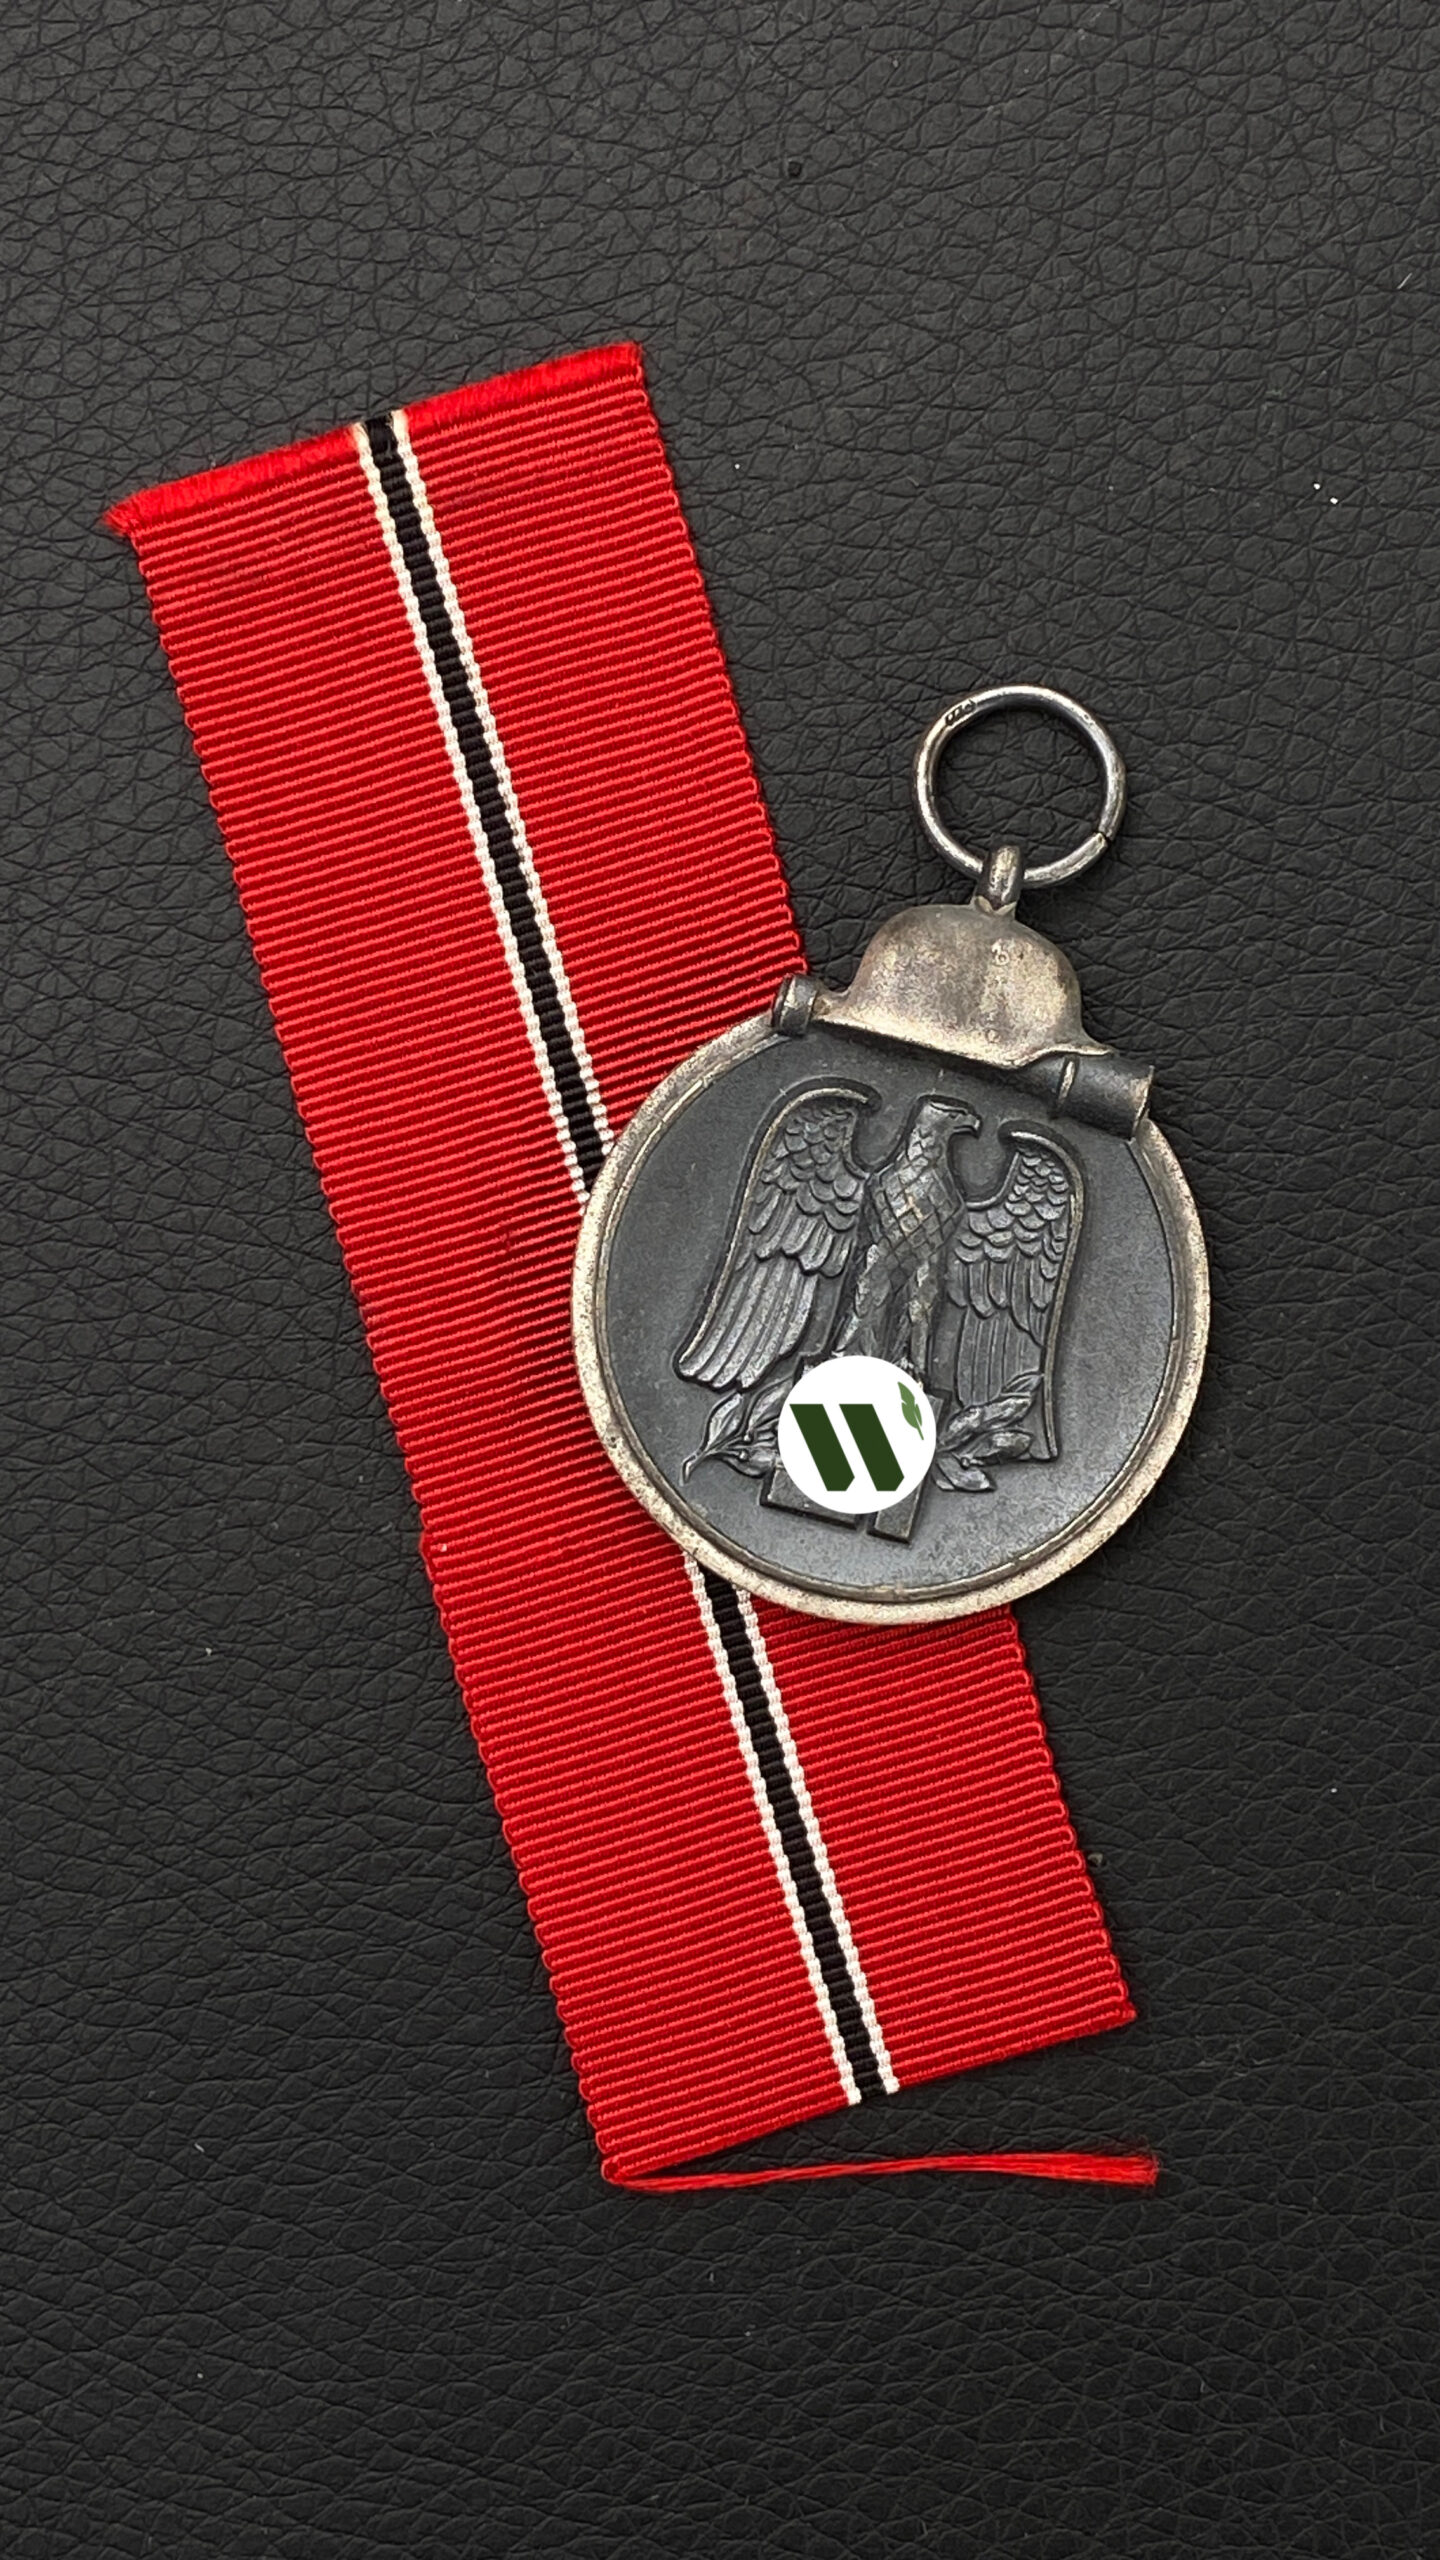 Медаль “За зимнюю кампанию на востоке 1941-42”.